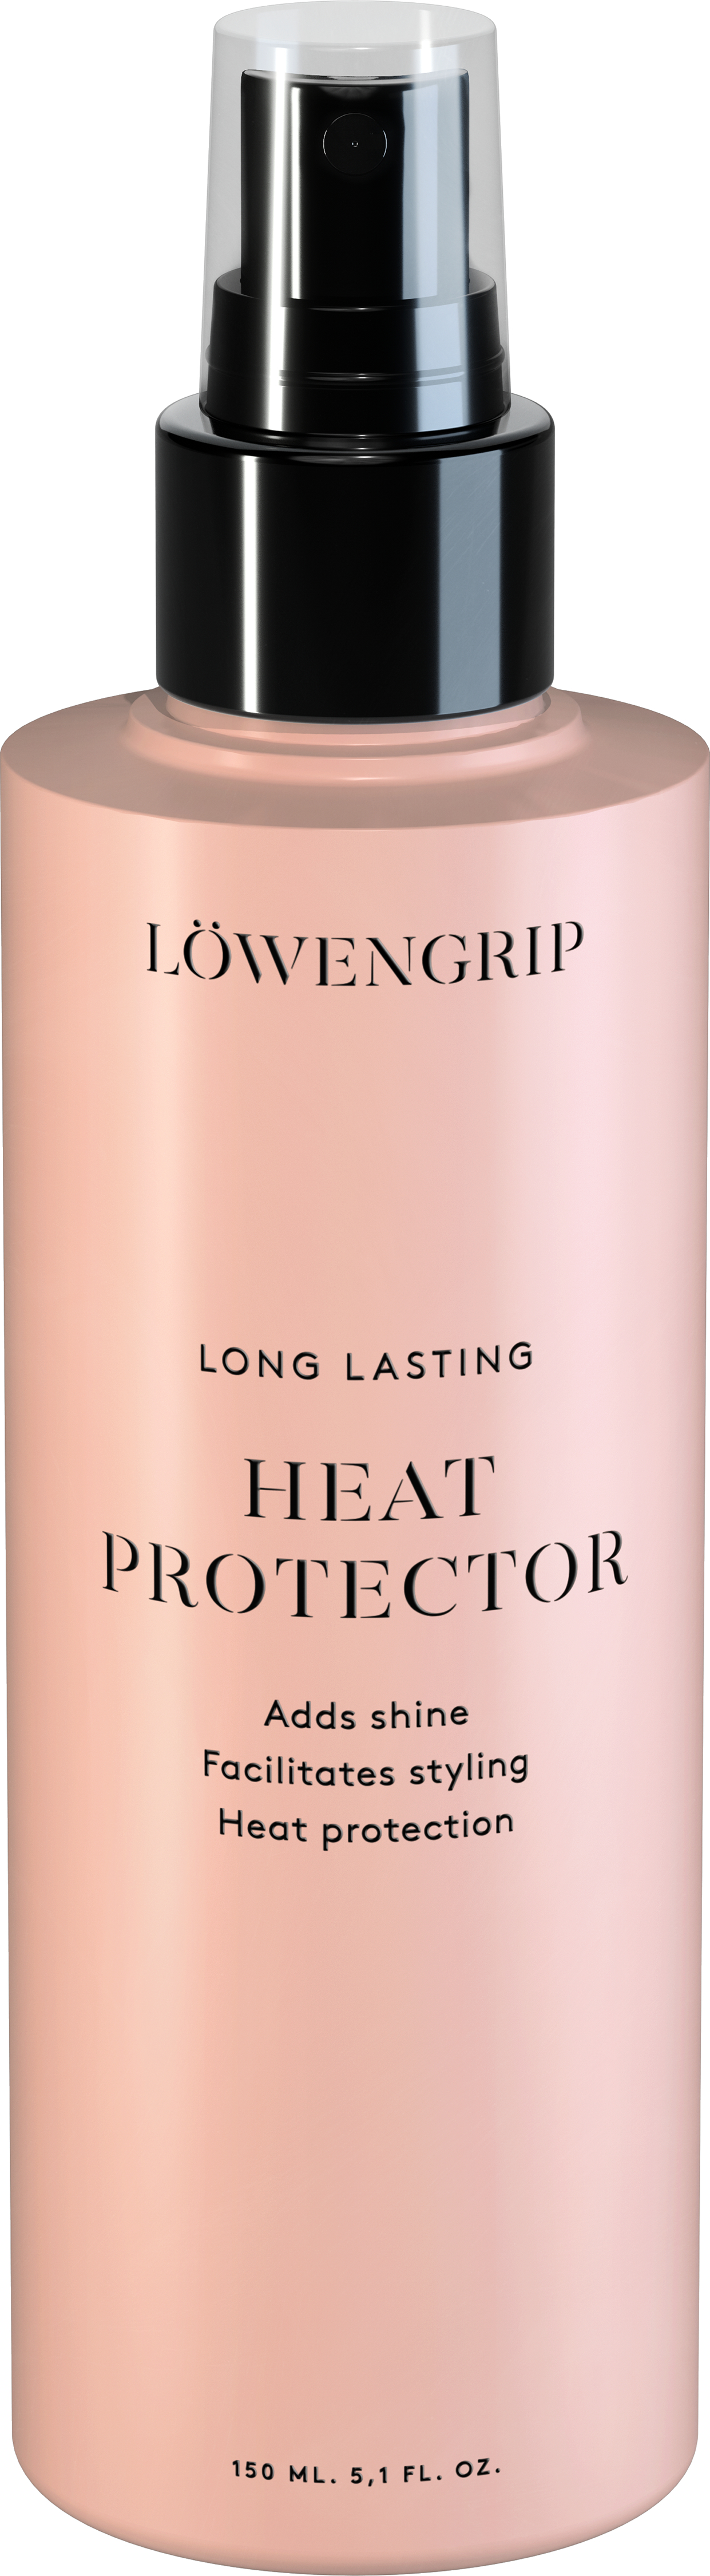 Löwengrip Long Lasting Heat Protector Parf 150 ml